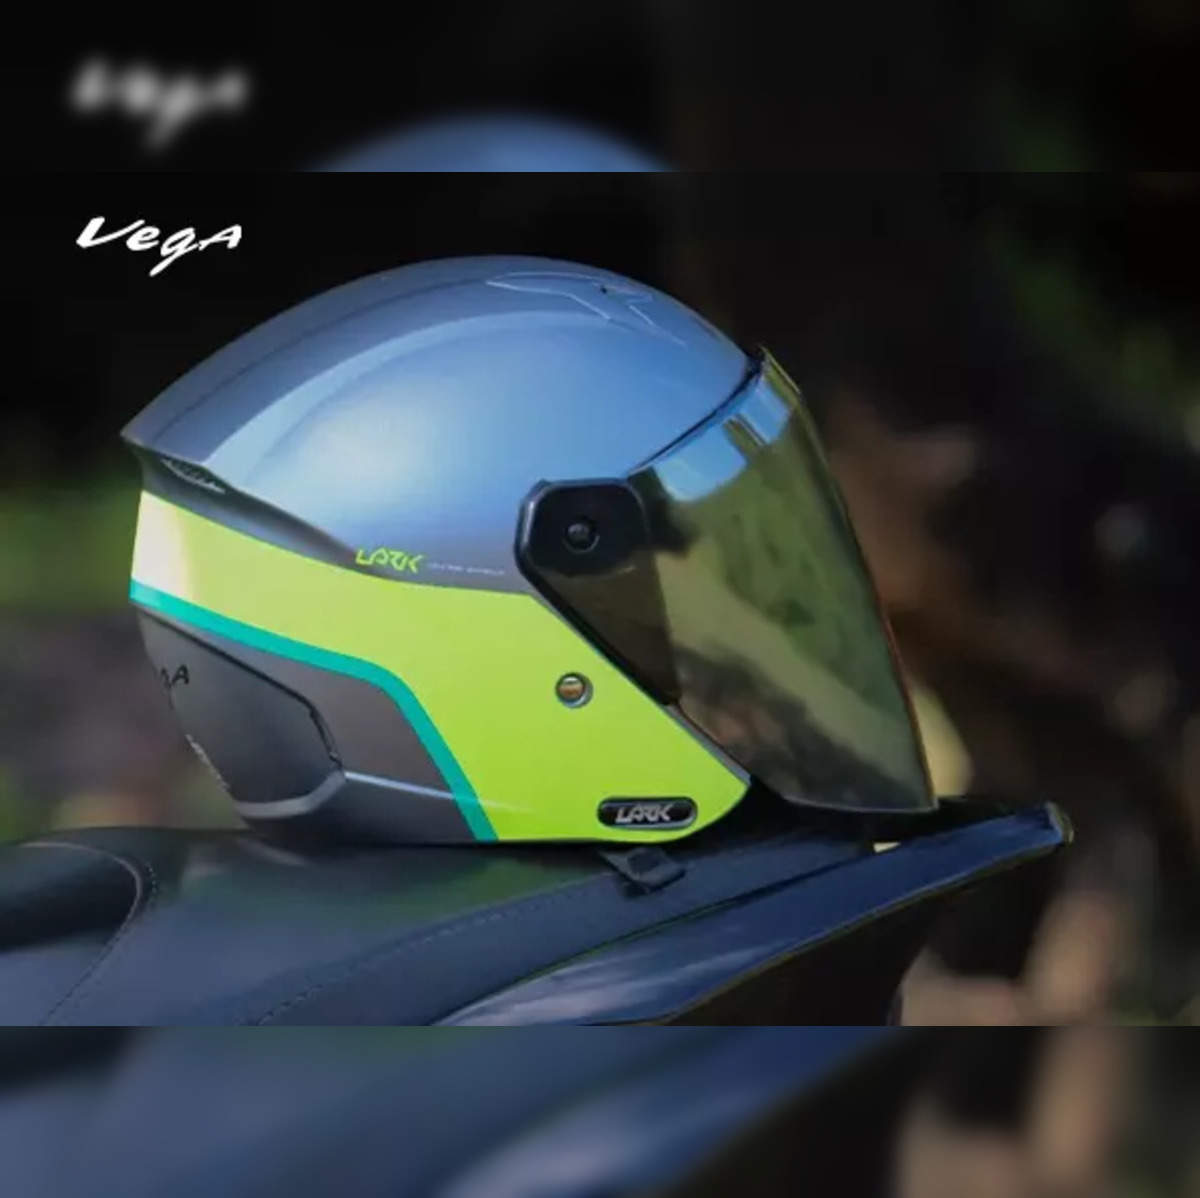 Buy Vega Helmets VRX Advanced Dirt Bike Helmet at Ubuy India